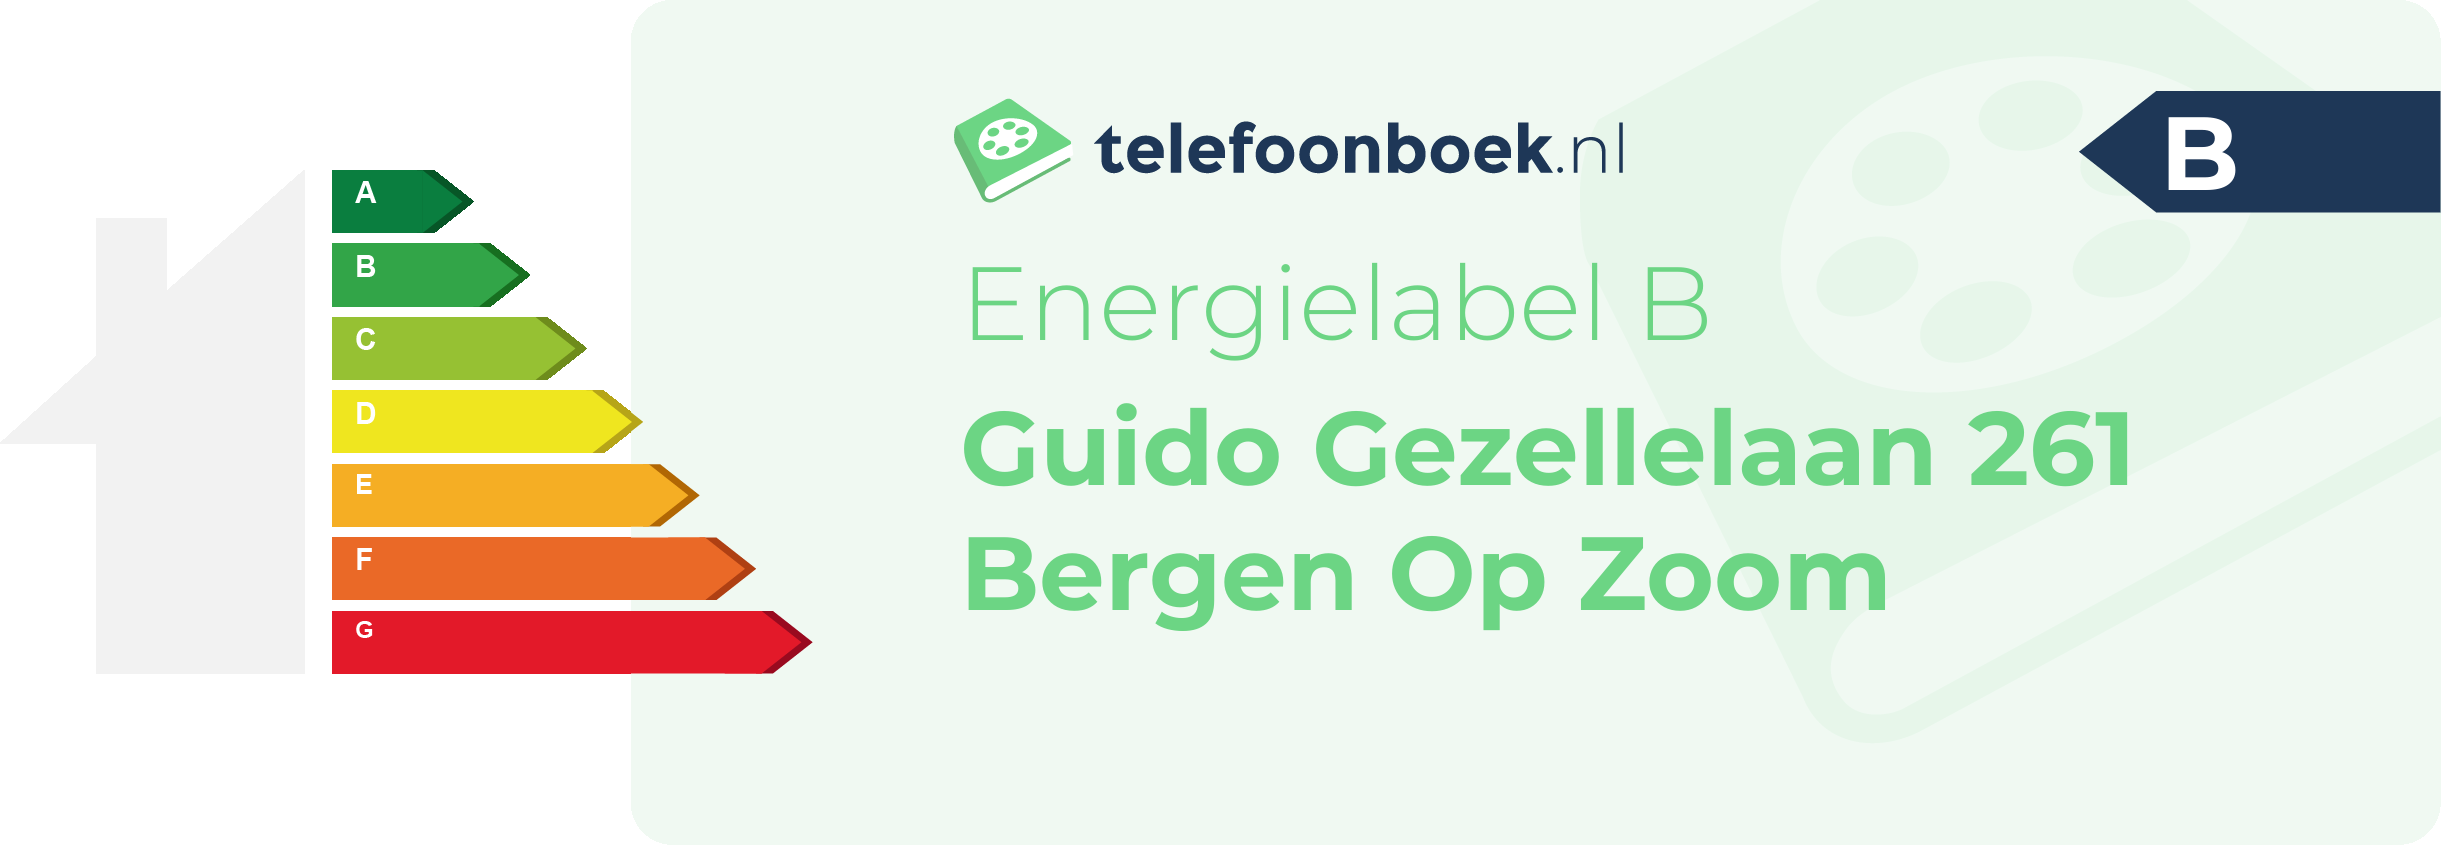 Energielabel Guido Gezellelaan 261 Bergen Op Zoom